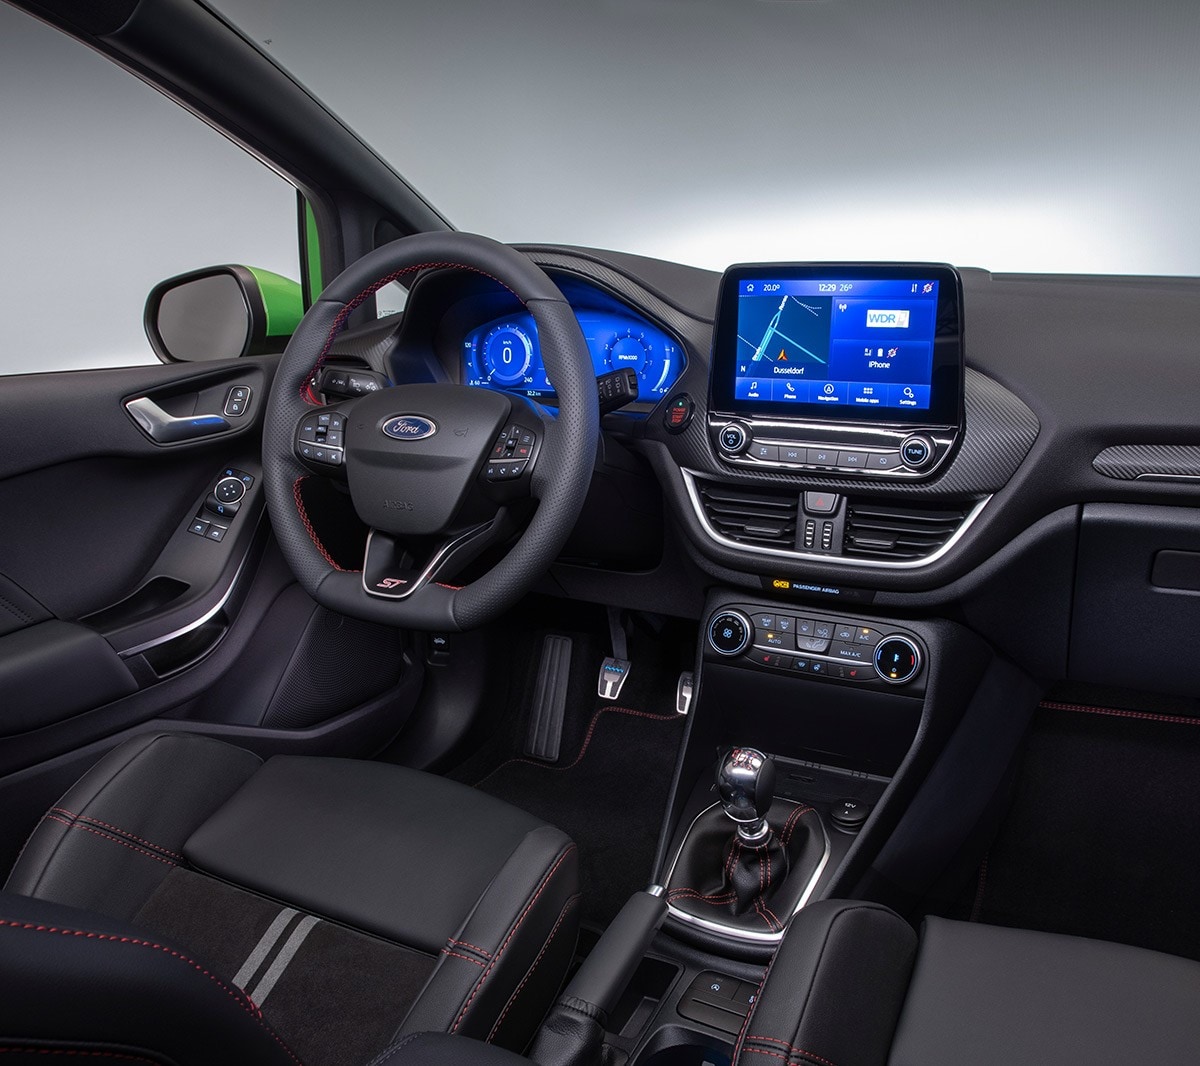 Ford Fiesta ST. Vista interna sul cockpit con volante, pomello del cambio e quadro strumenti digitale.